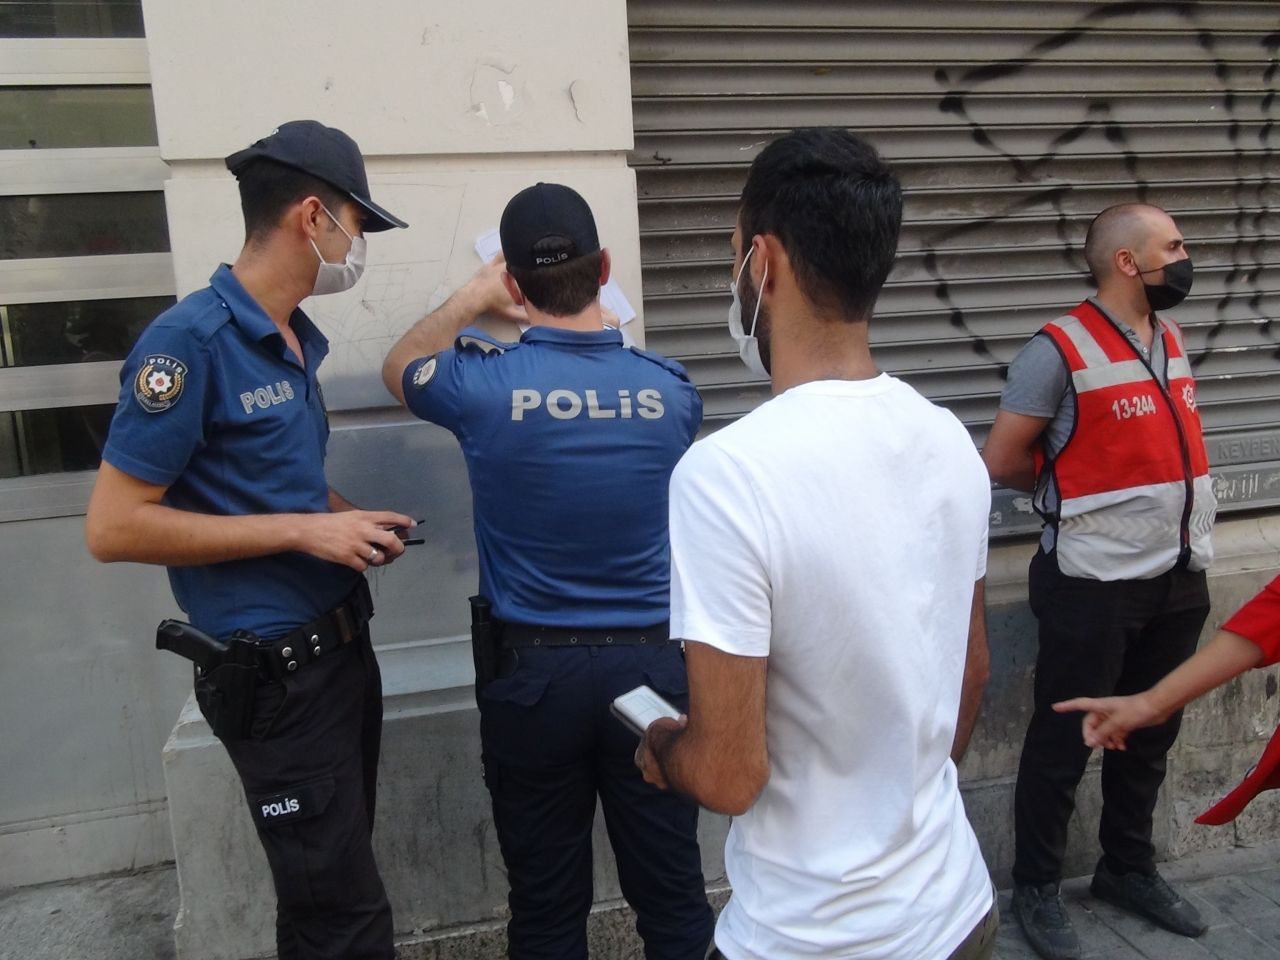 İstanbul'da yüzsüzlüğün bu kadarına da pes! Polise bakın ne dedi